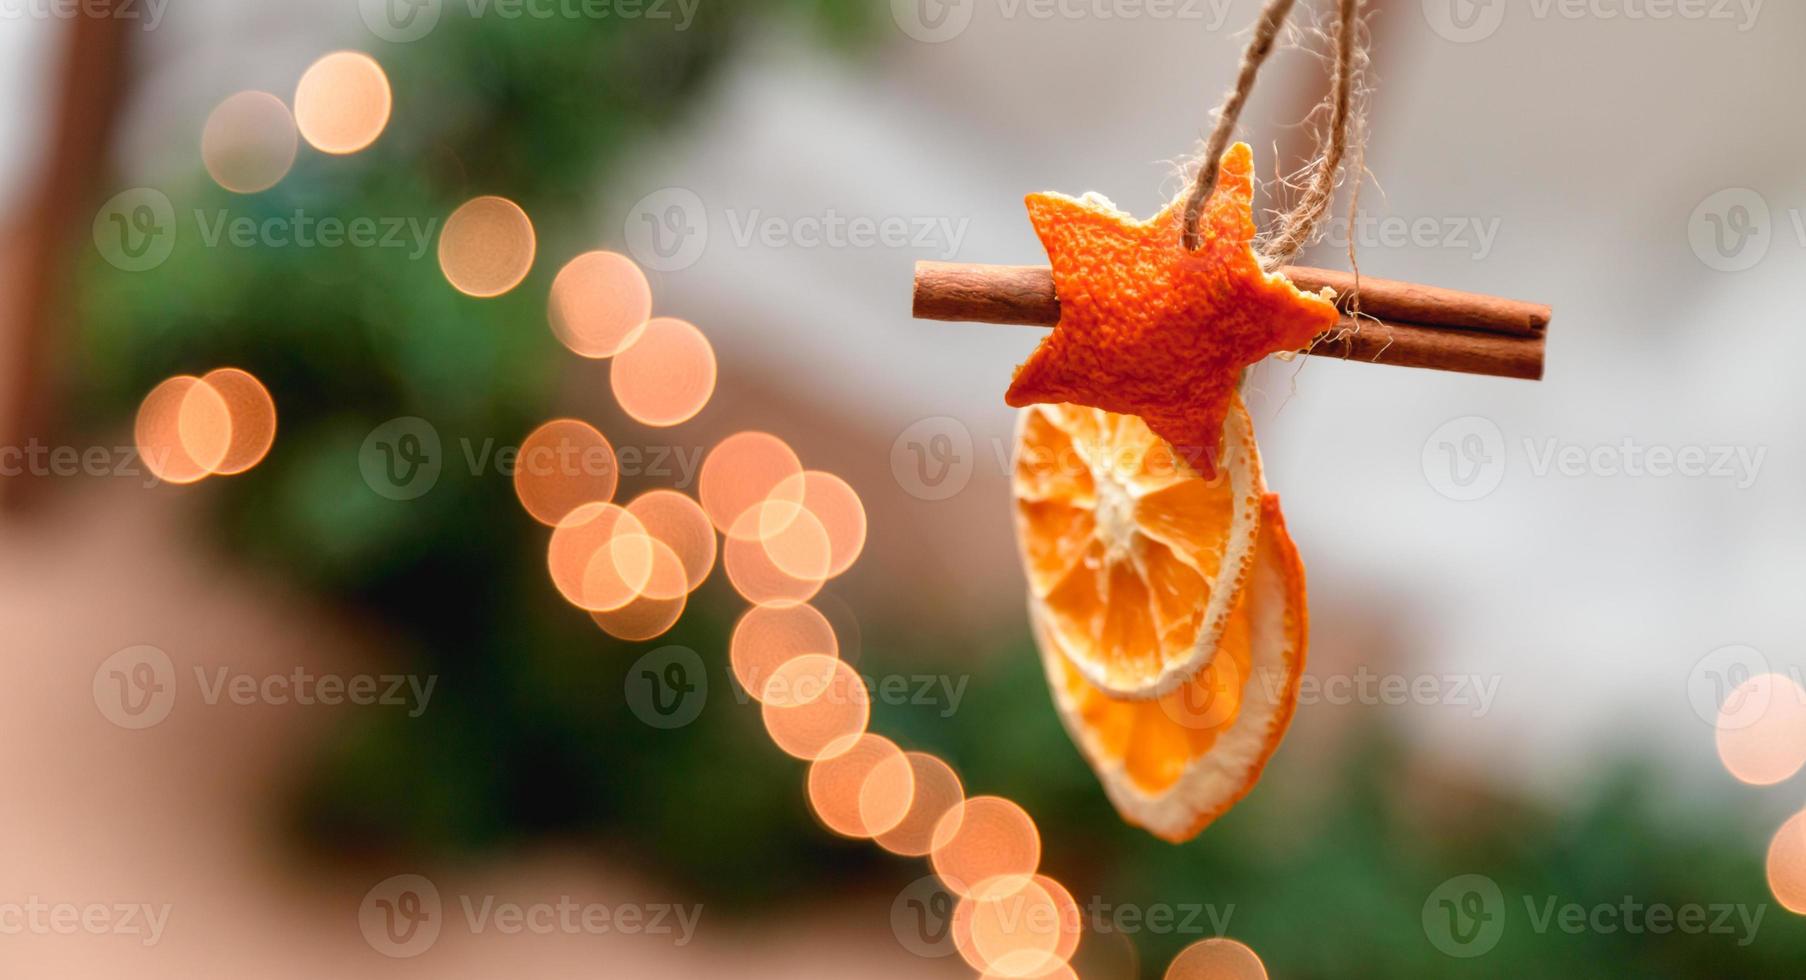 Decoración navideña colgante de naranjas secas, mandarina y estrellas de canela foto